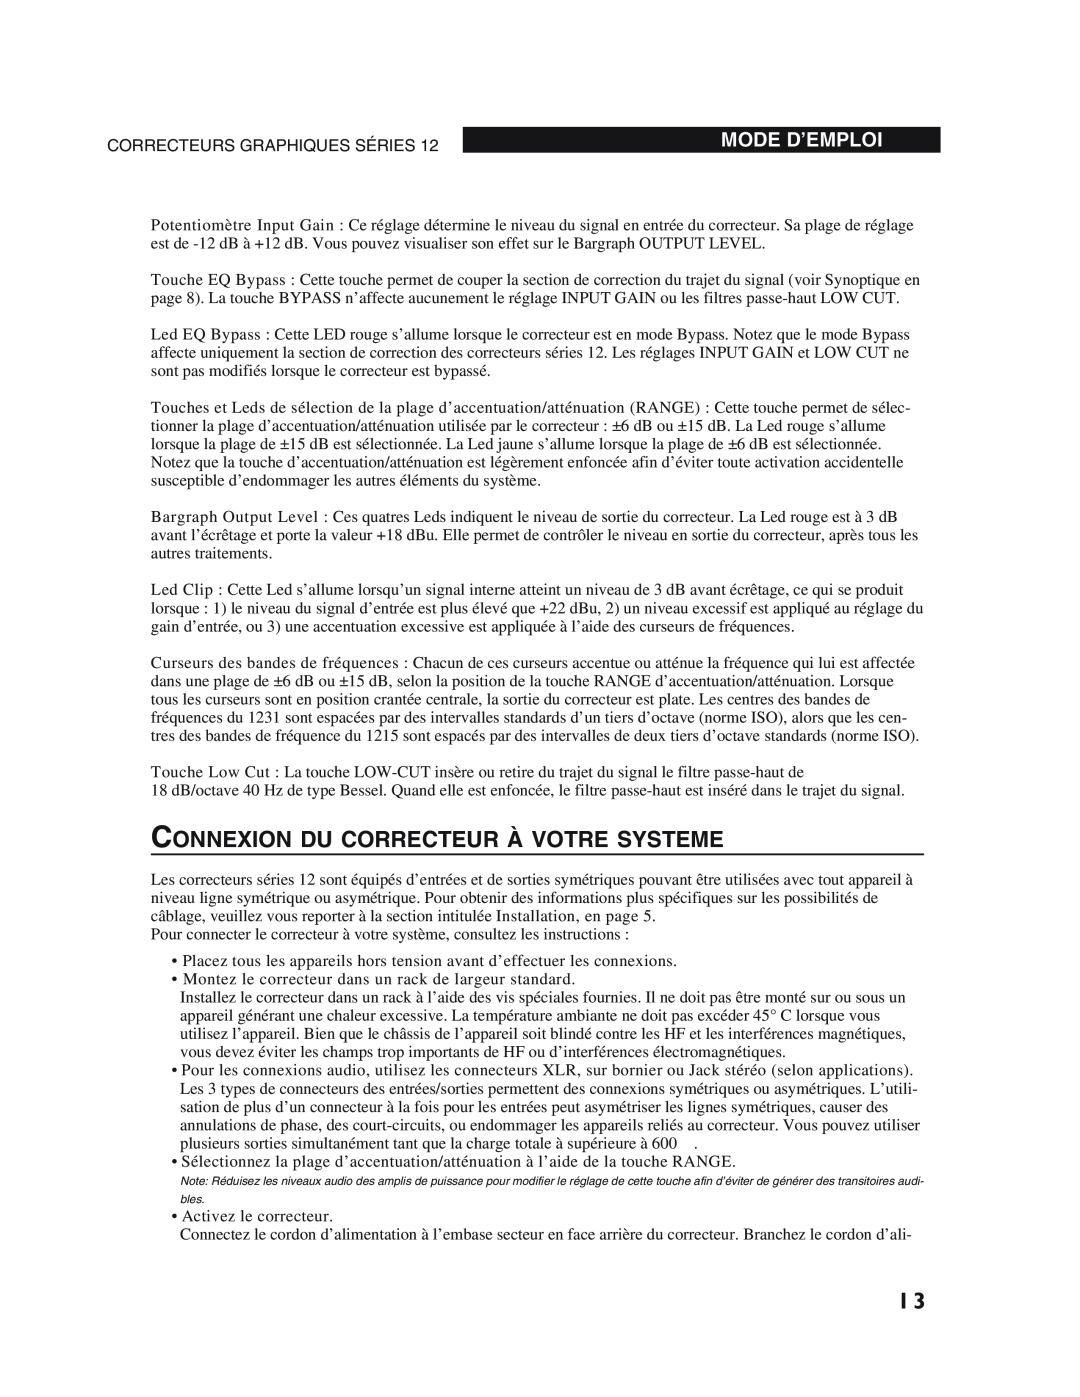 dbx Pro 12 Series operation manual Connexion Du Correcteur À Votre Systeme, Mode D’Emploi 